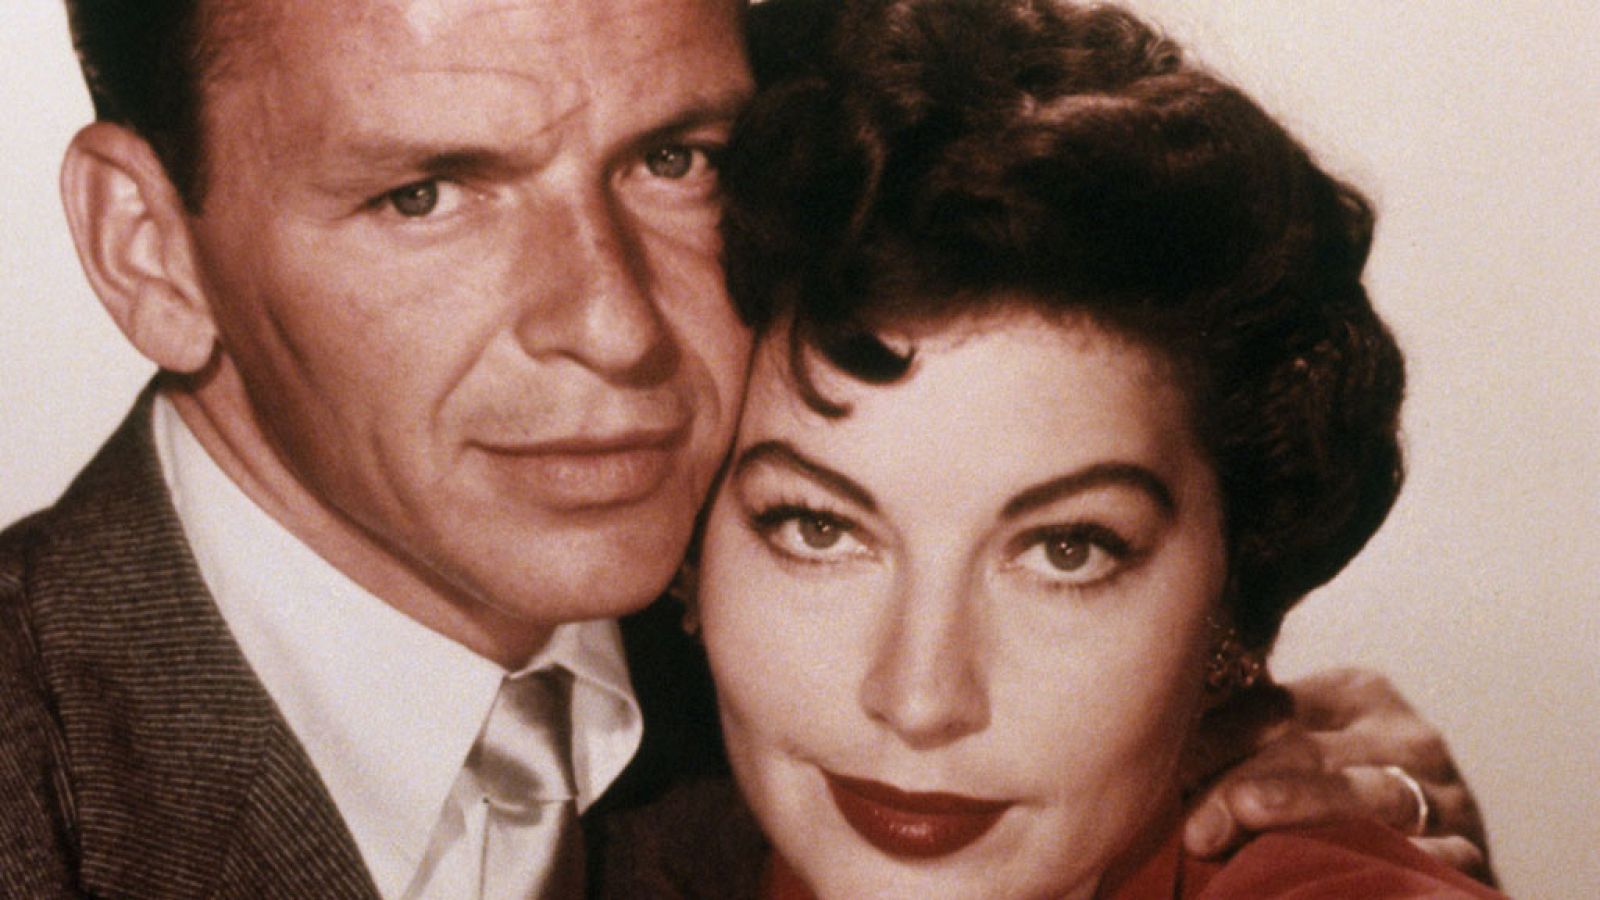 La noche temática - Sinatra y Ava, una pareja de escándalo